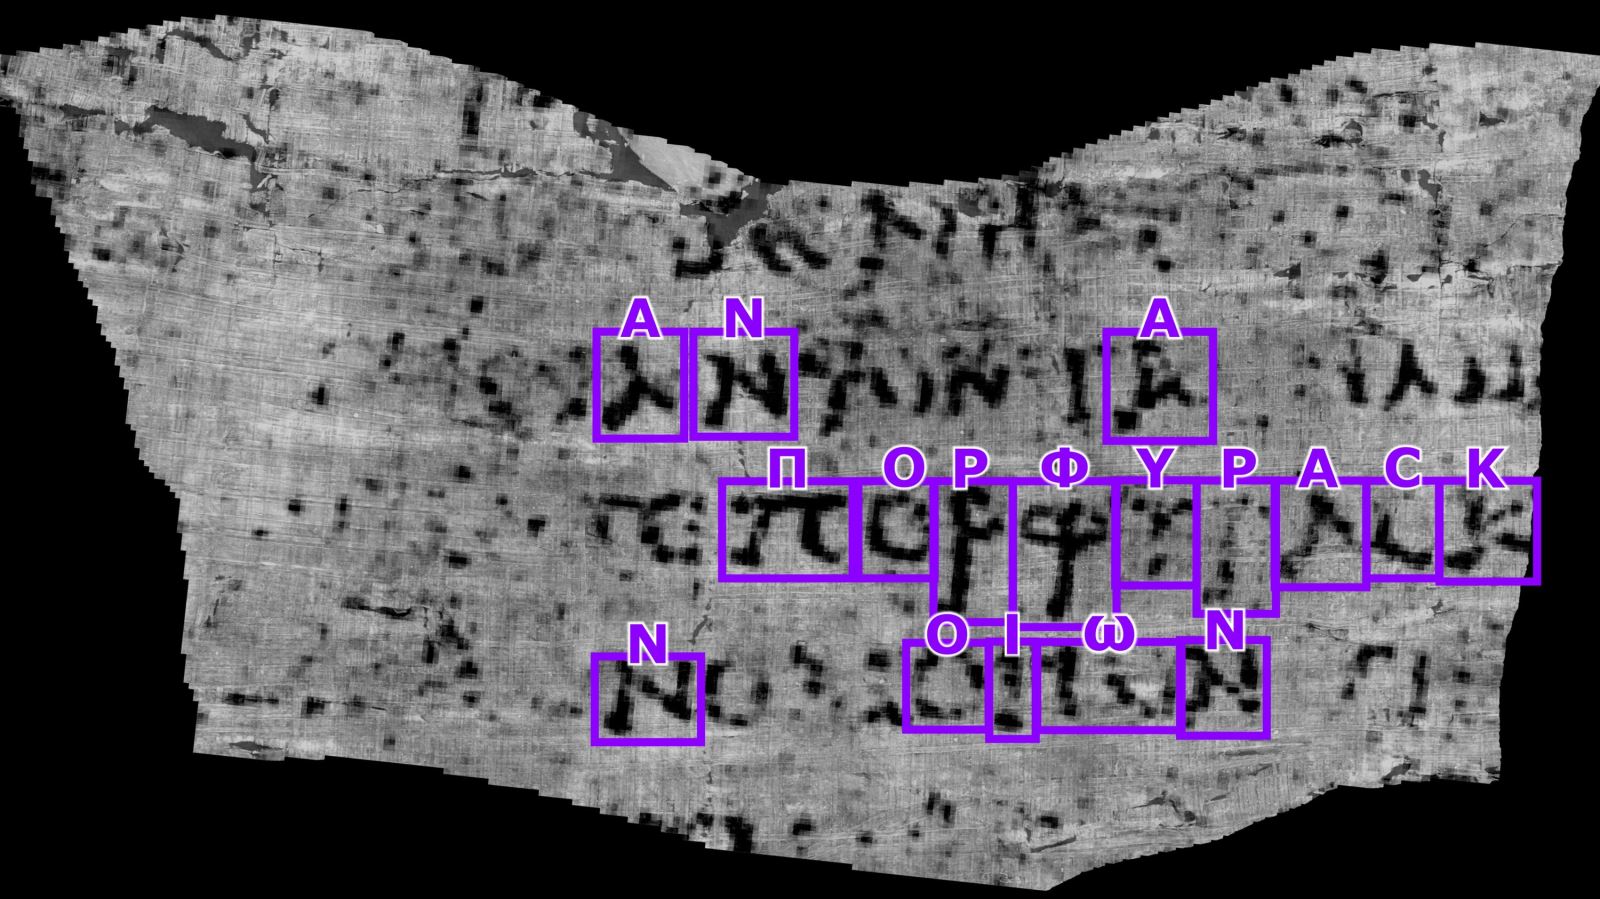 AI giúp giải mã cuộn giấy bị núi lửa chôn vui vào năm 79 sau Công nguyên - Ảnh 3.